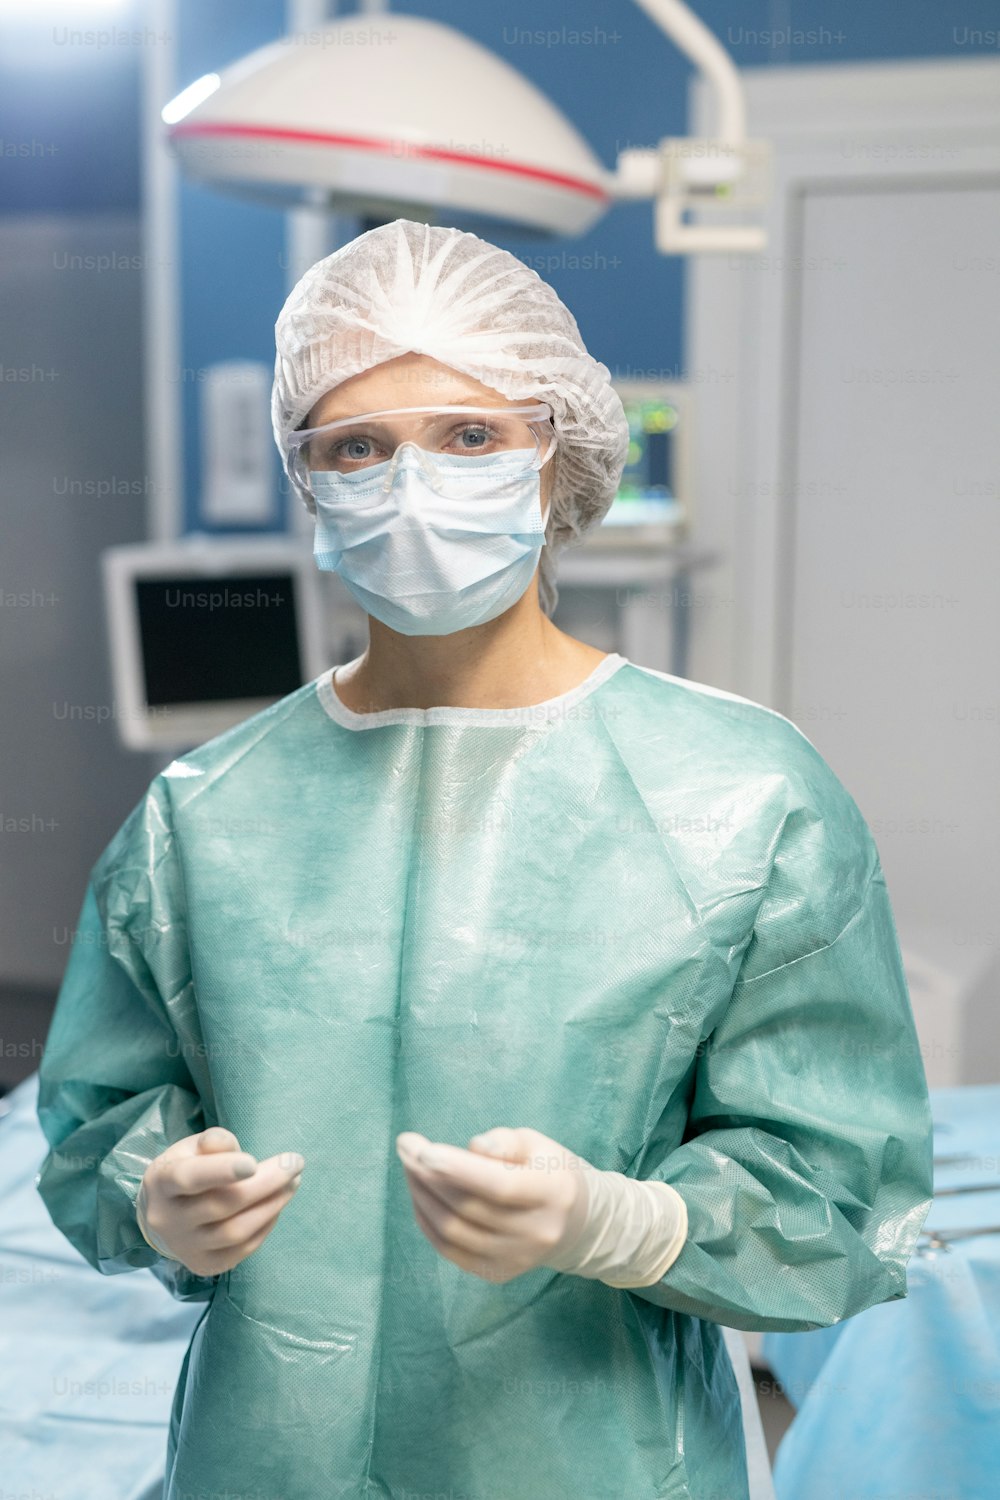 보호 장갑, 마스크, 안경, 작업복을 입은 젊은 현대 여성 외과의가 수술실에서 카메라 앞에 서 있다